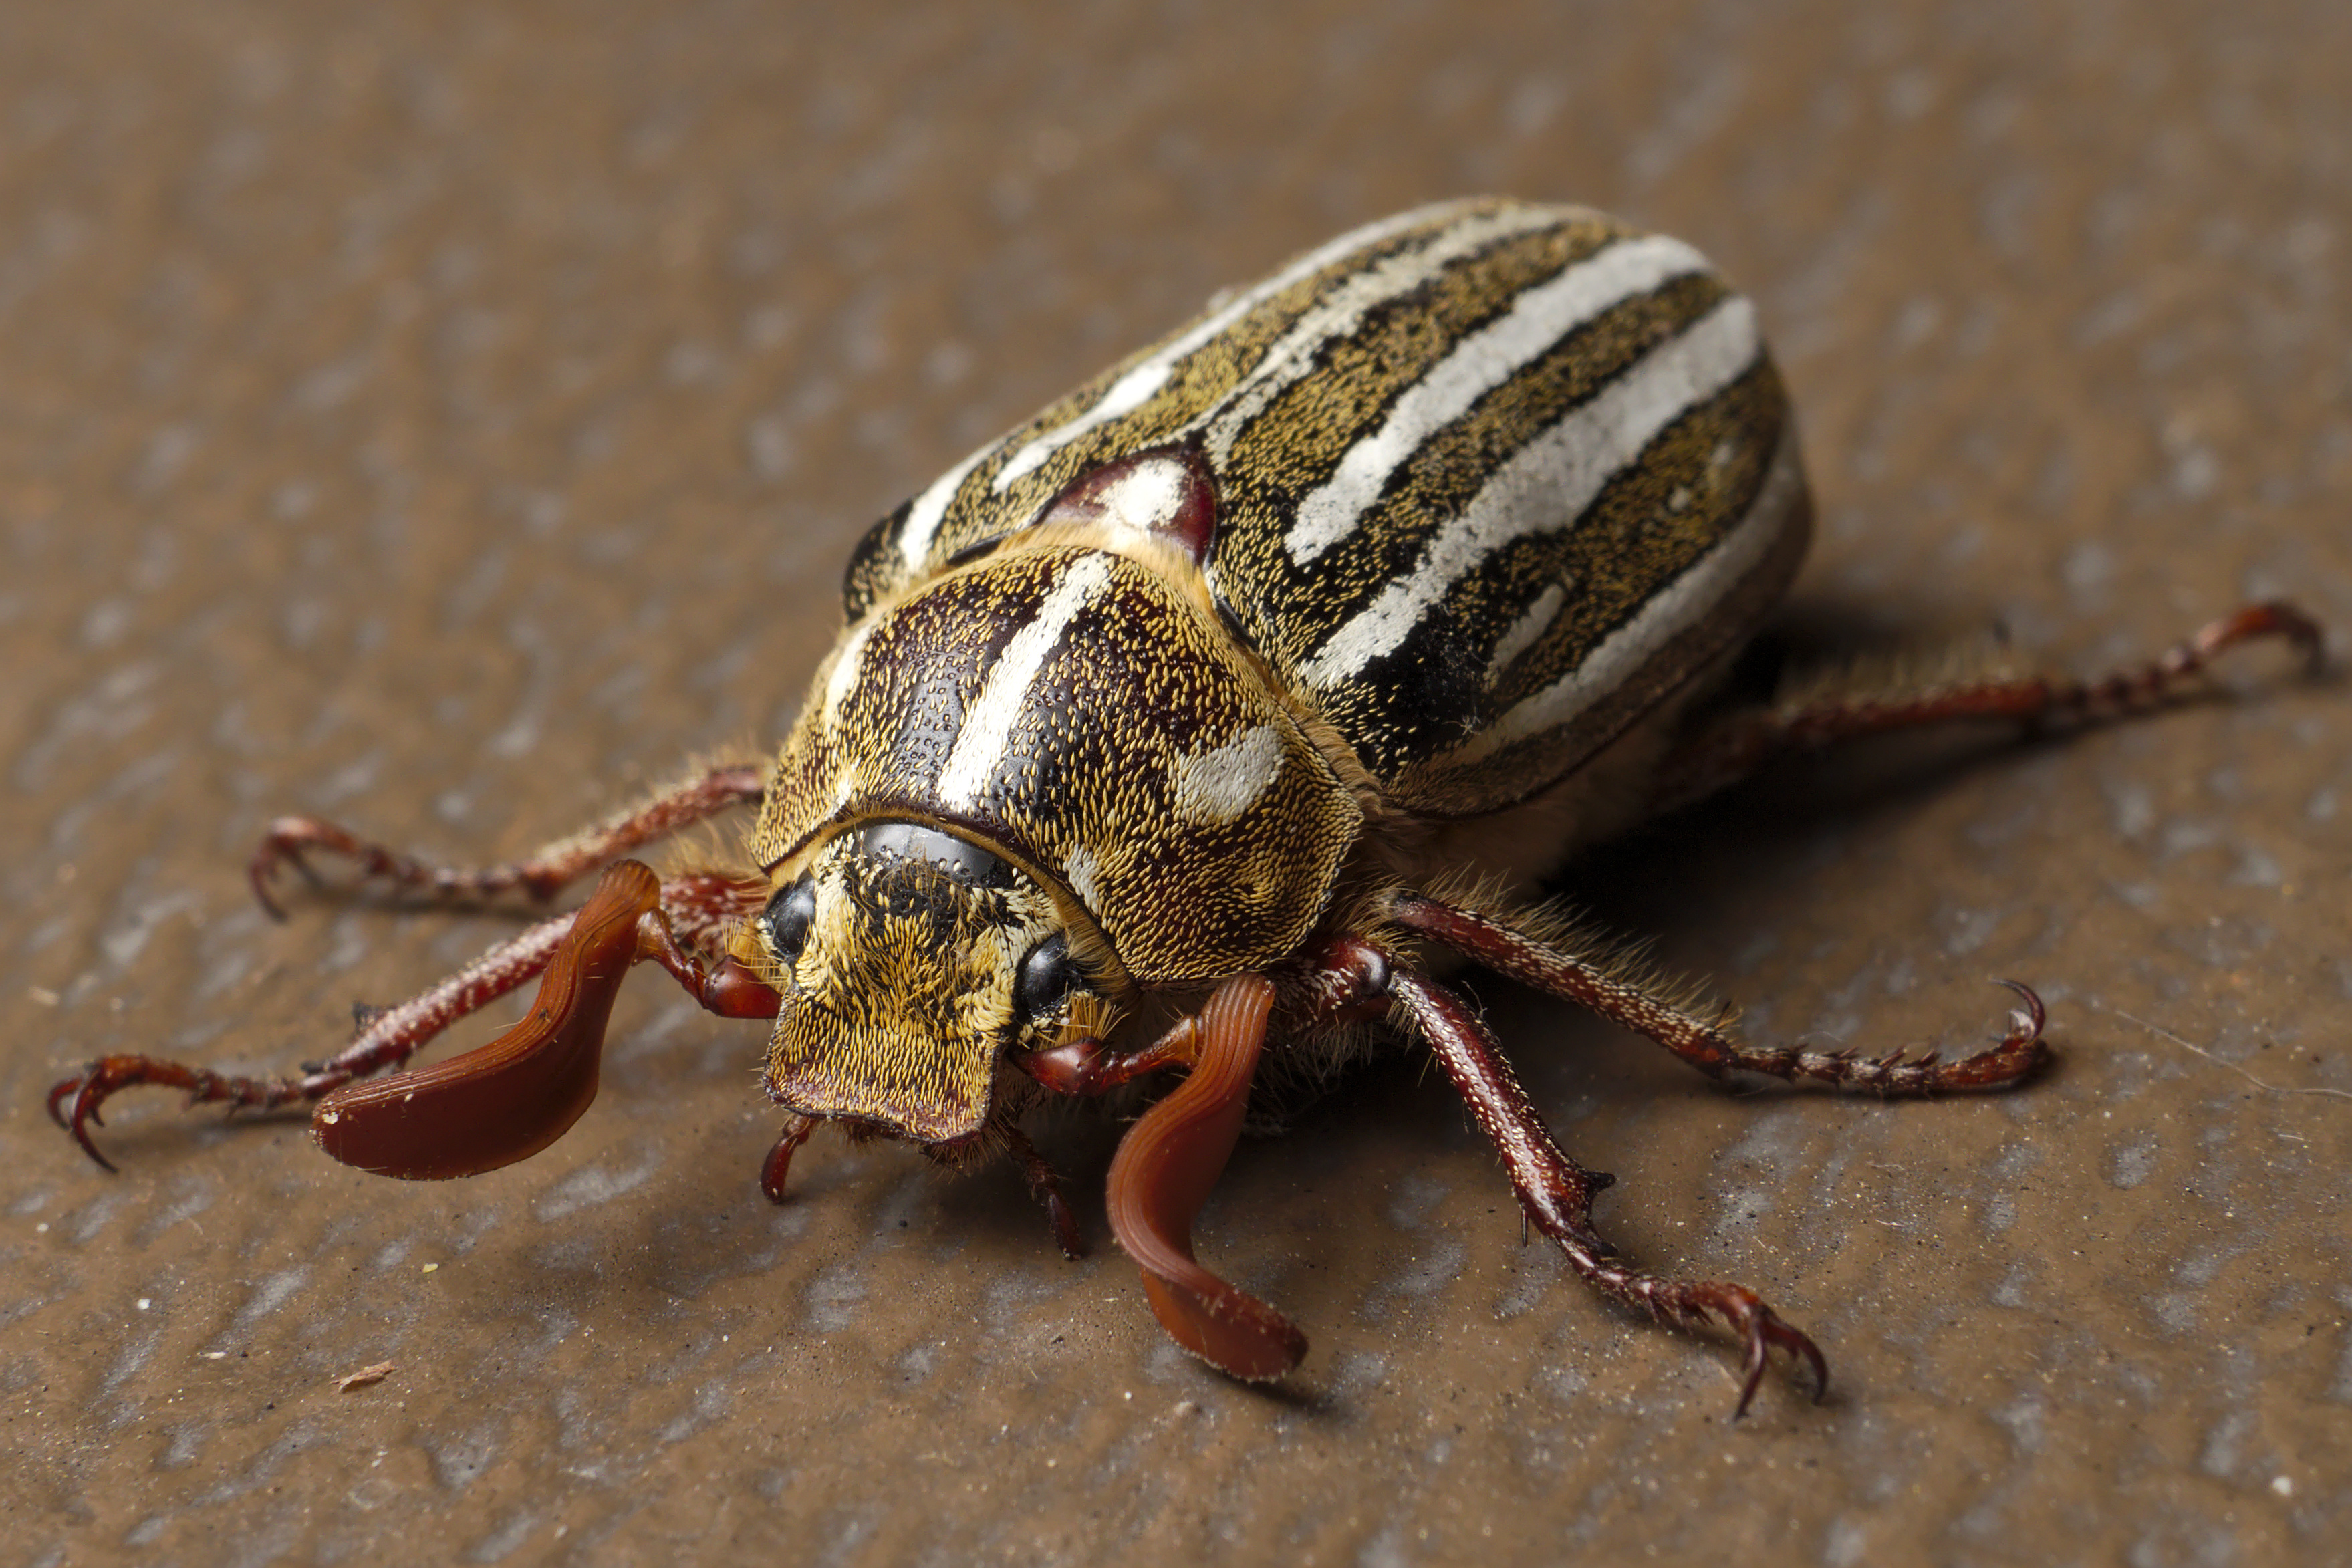 Ten-lined June beetle - Wikipedia